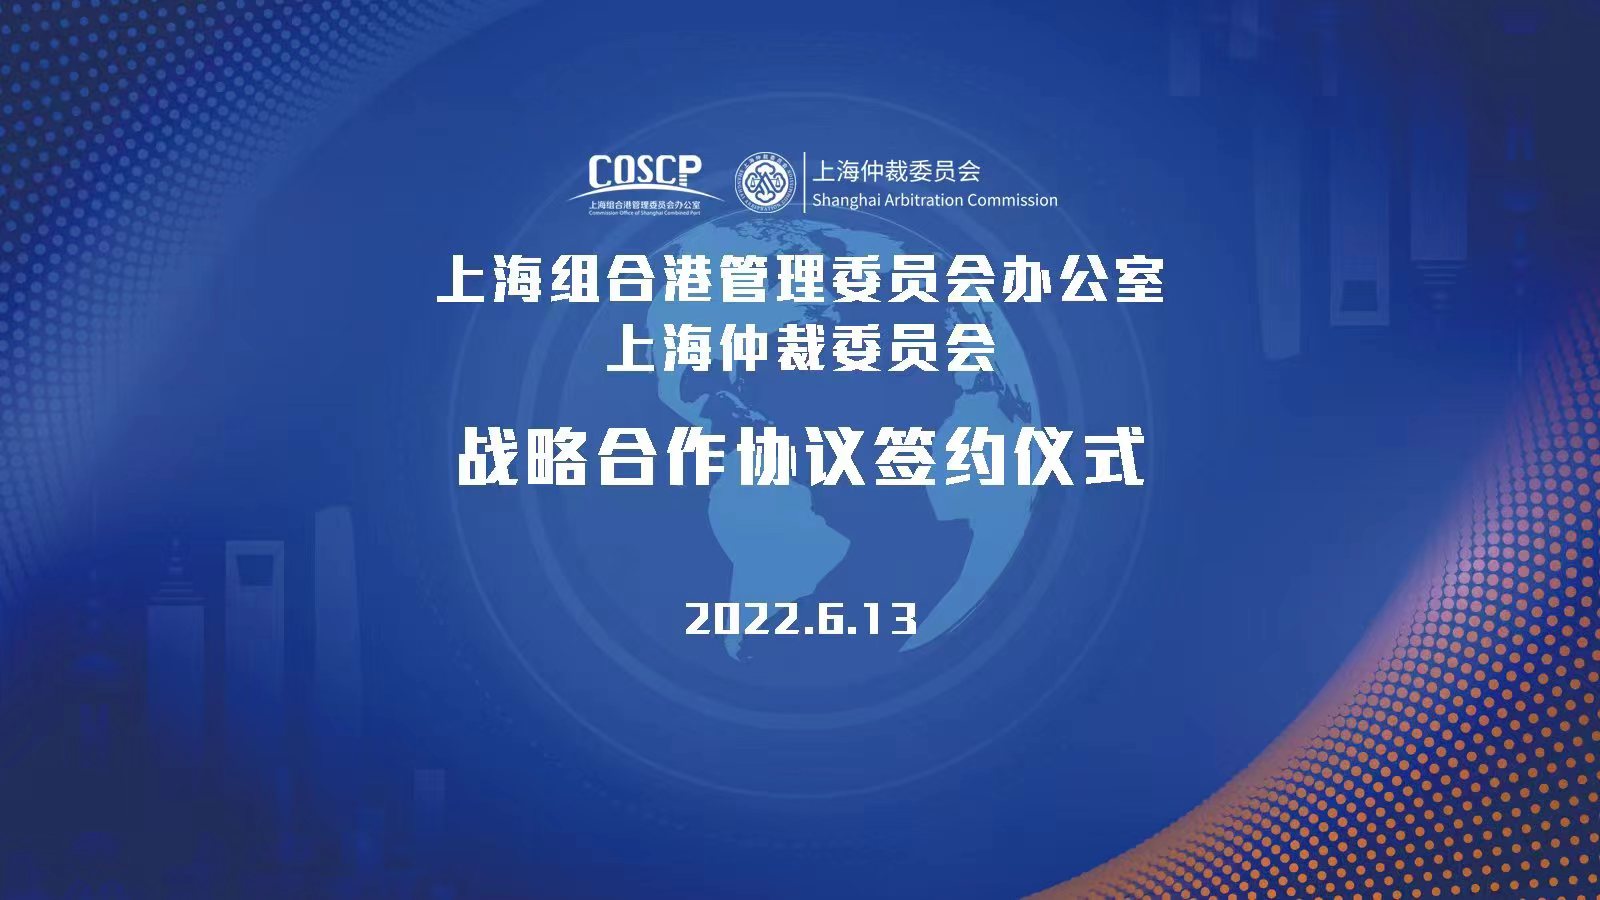 上海組合港管理委員會辦公室上海仲裁委員會戰略合作協議簽約儀式